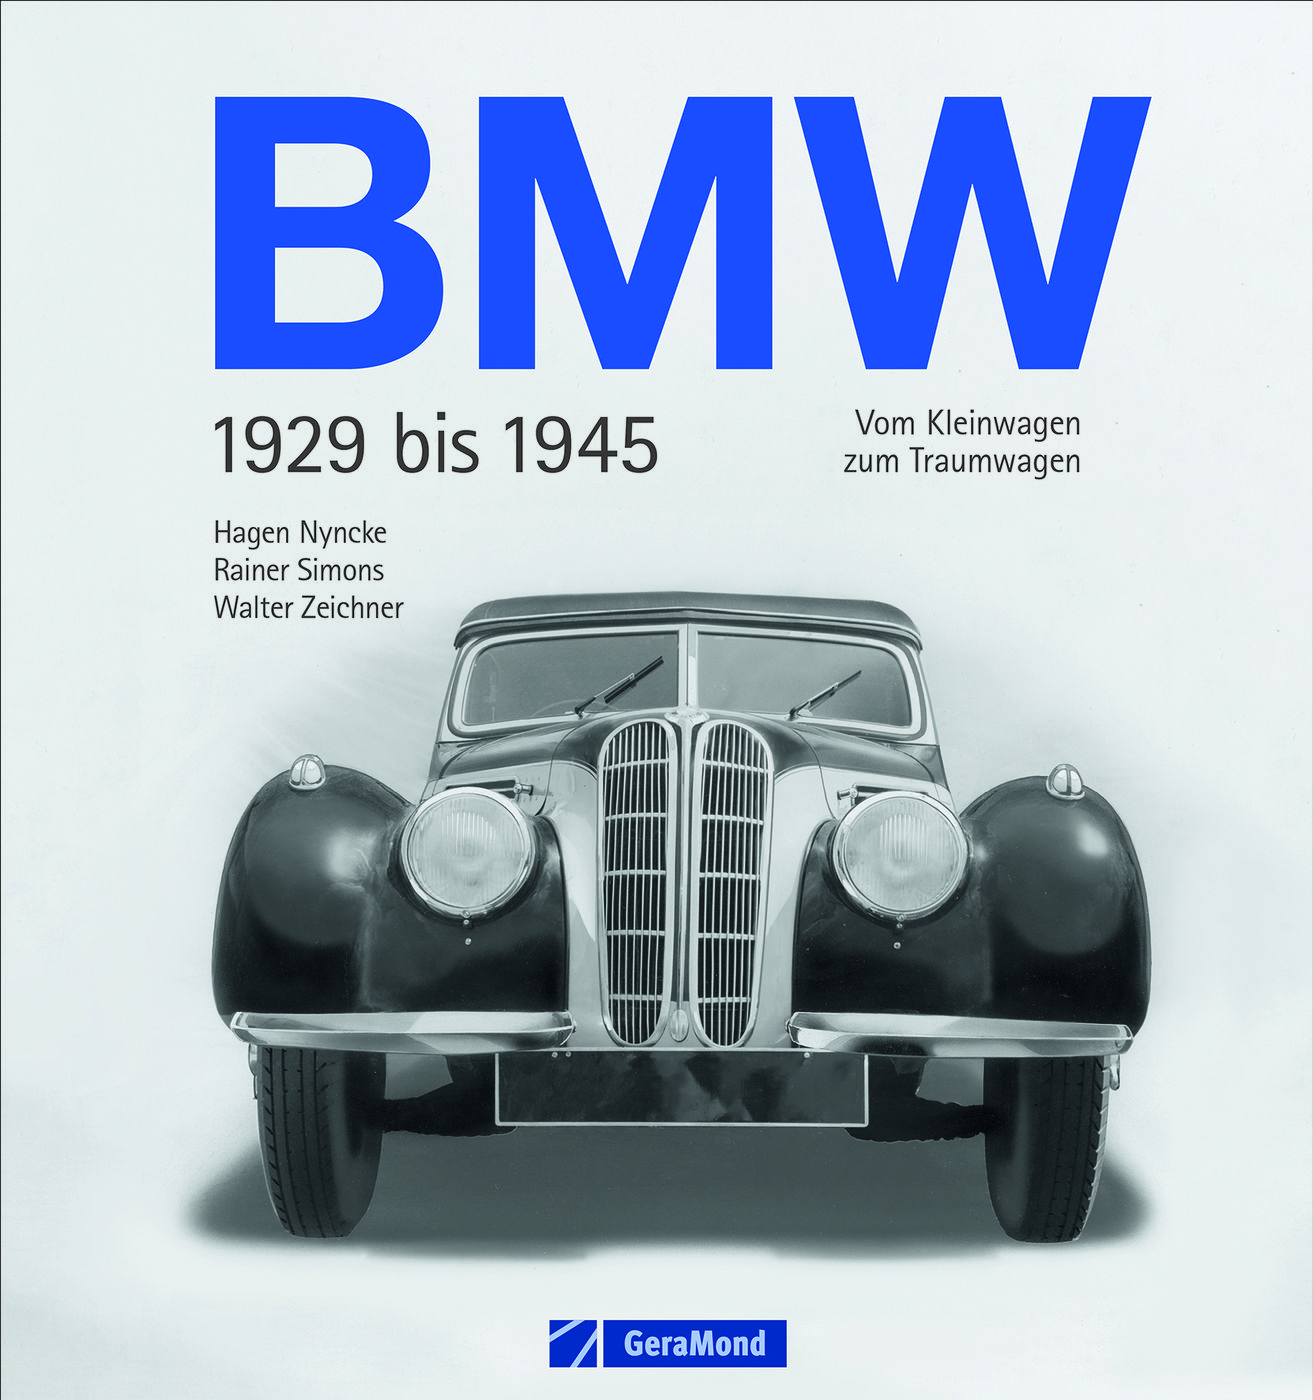 BMW
BMW
BMW